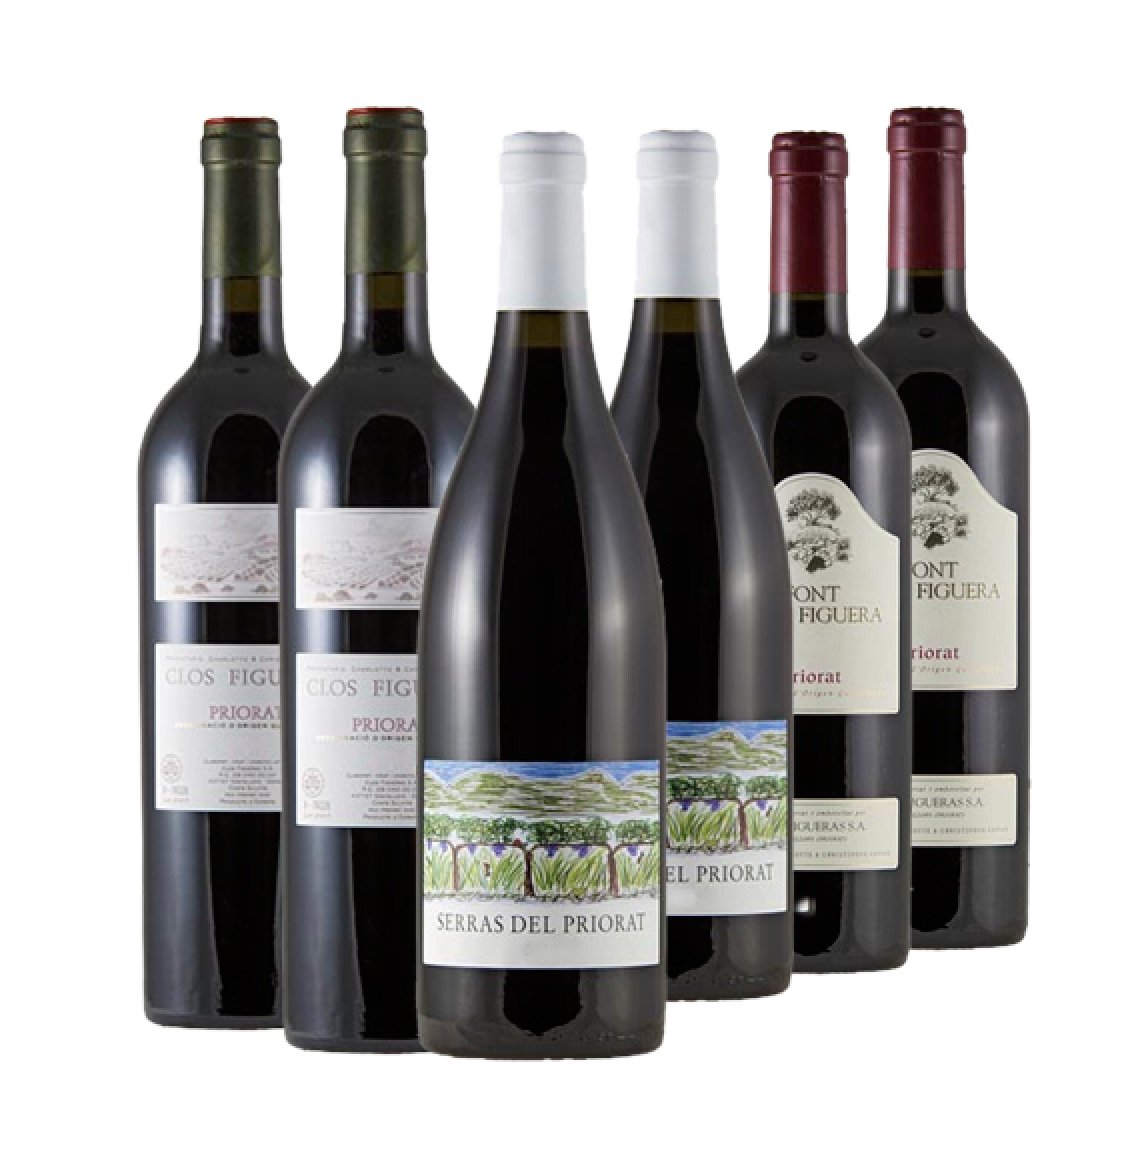 Ribera & Priorat - 2 vrcholy španělského vinařství